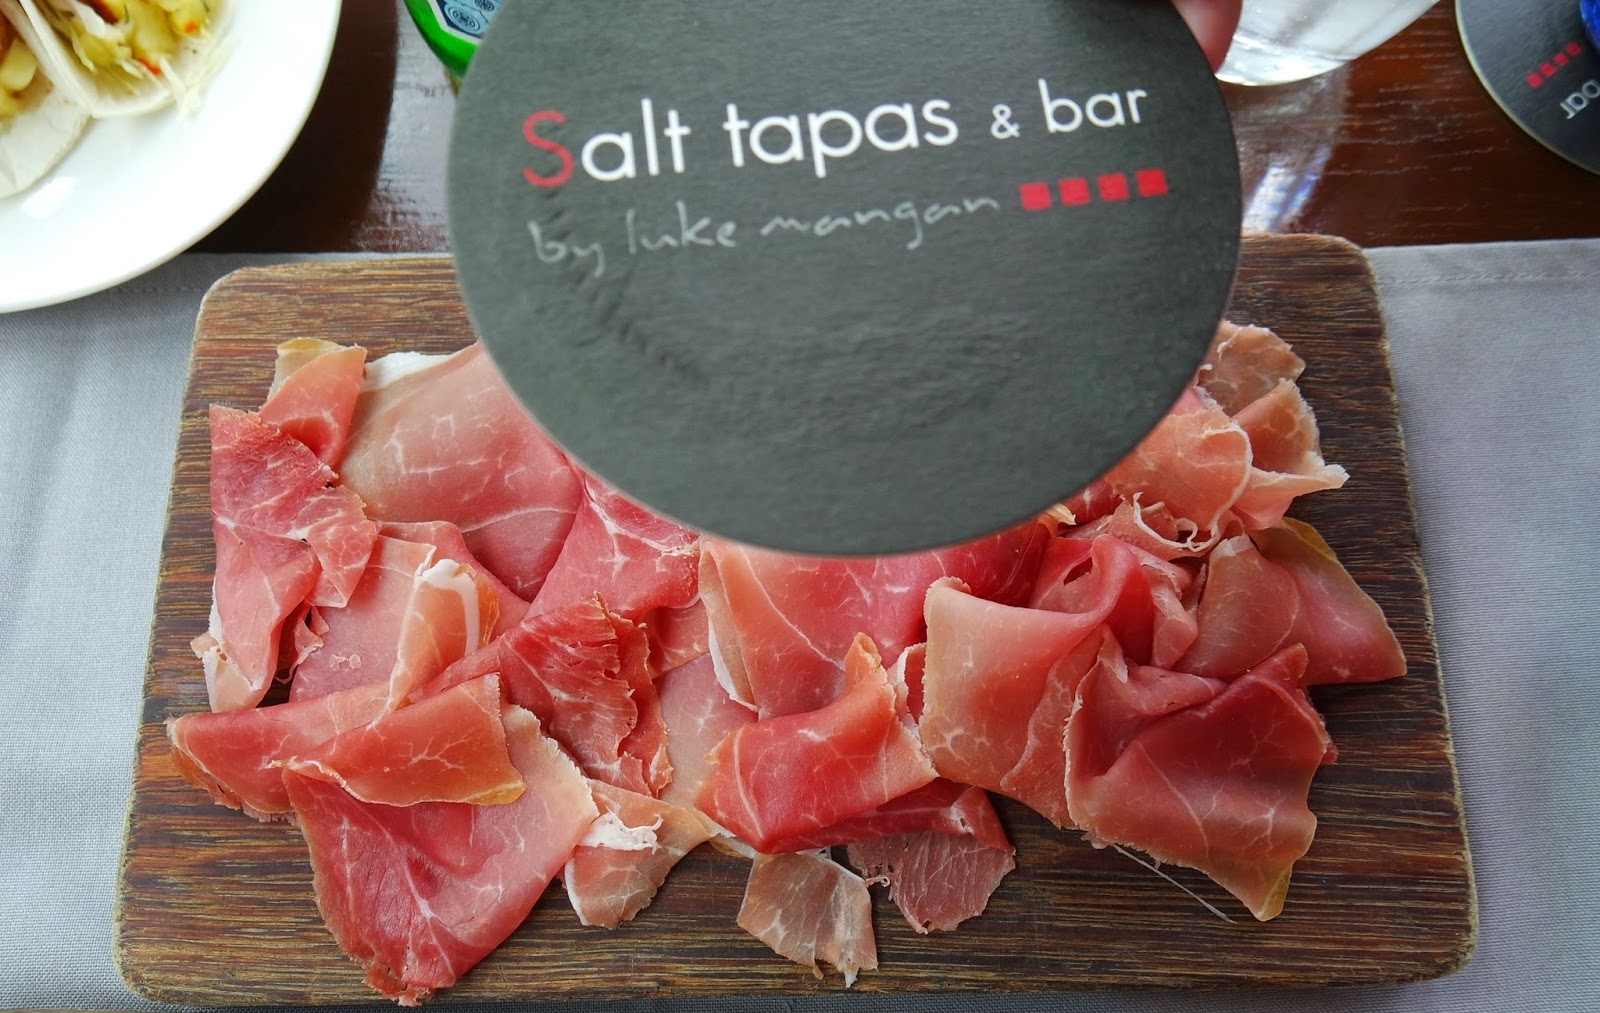 Salt Tapas and Bar - Parma Prosciutto